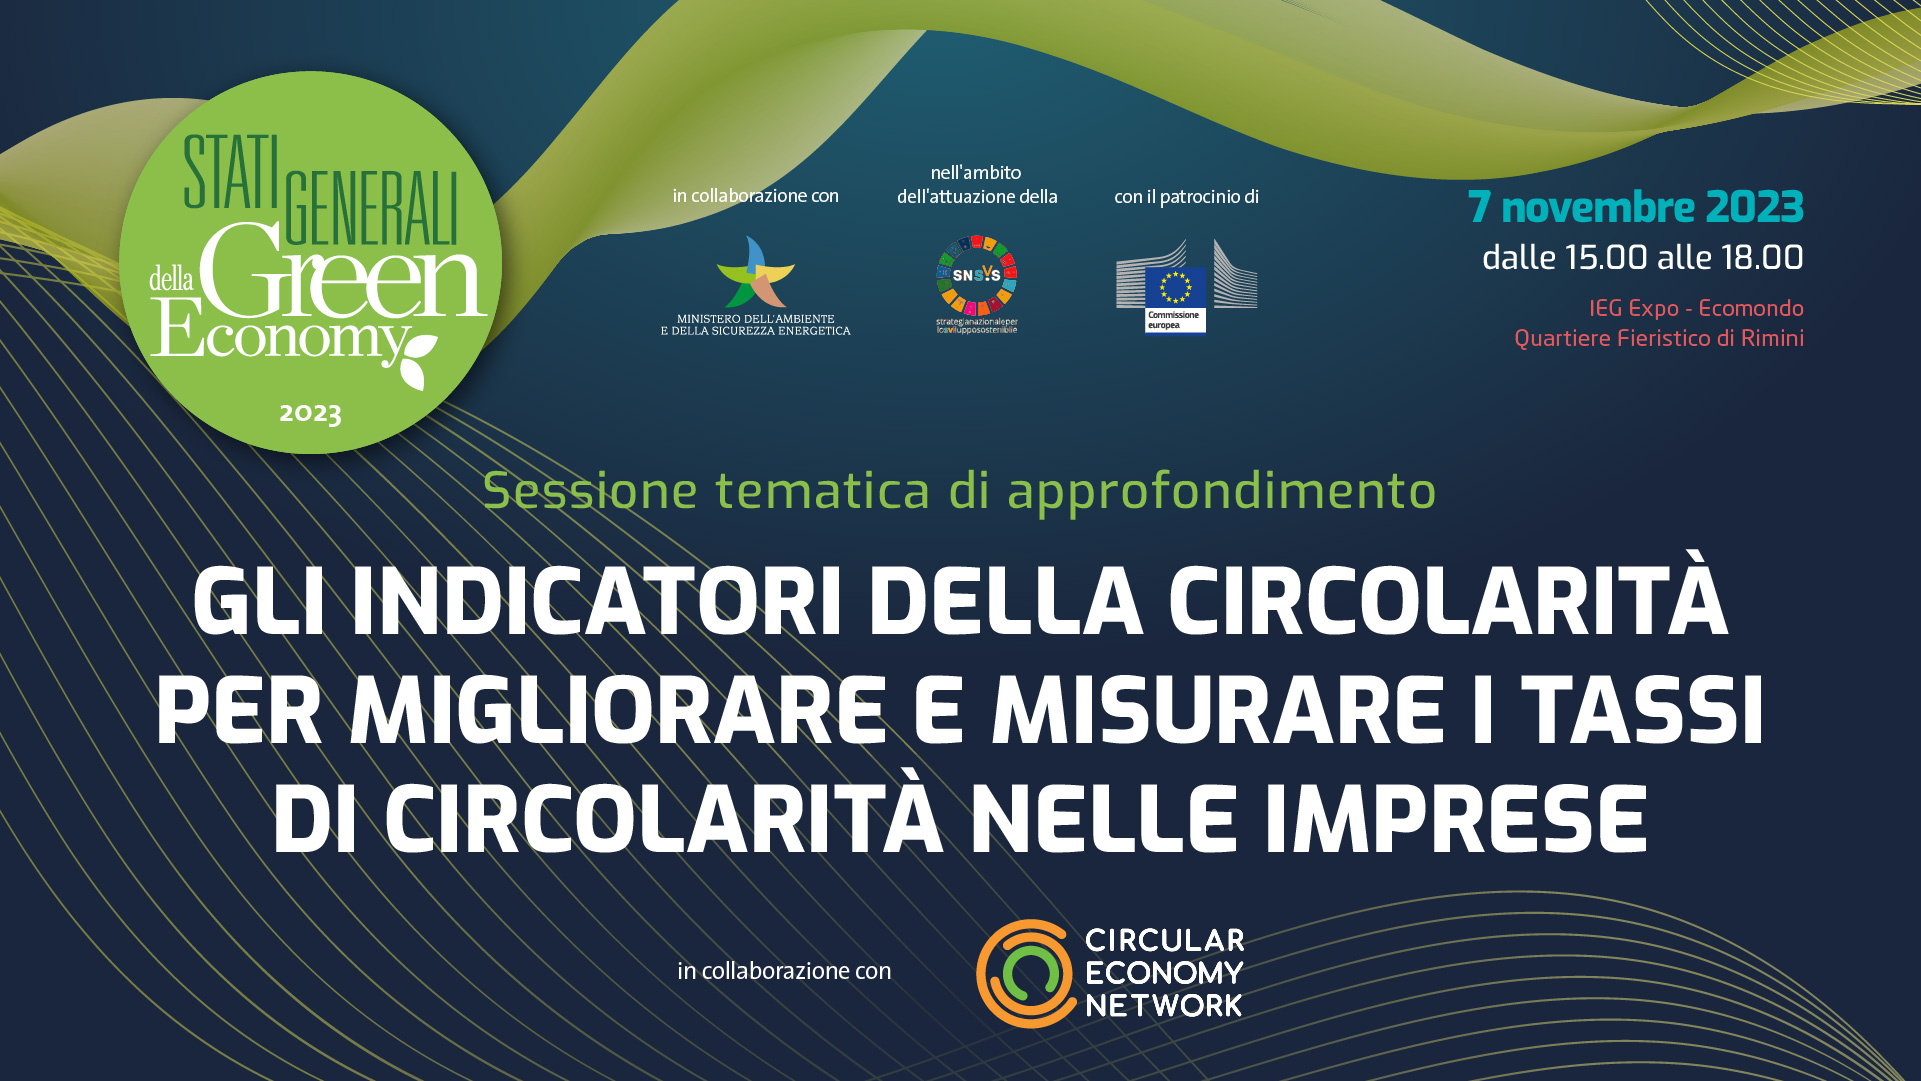 Come misurare la circolarità nelle imprese?Il focus nella sessione tematica degli Stati Generali della Green Economy 2023